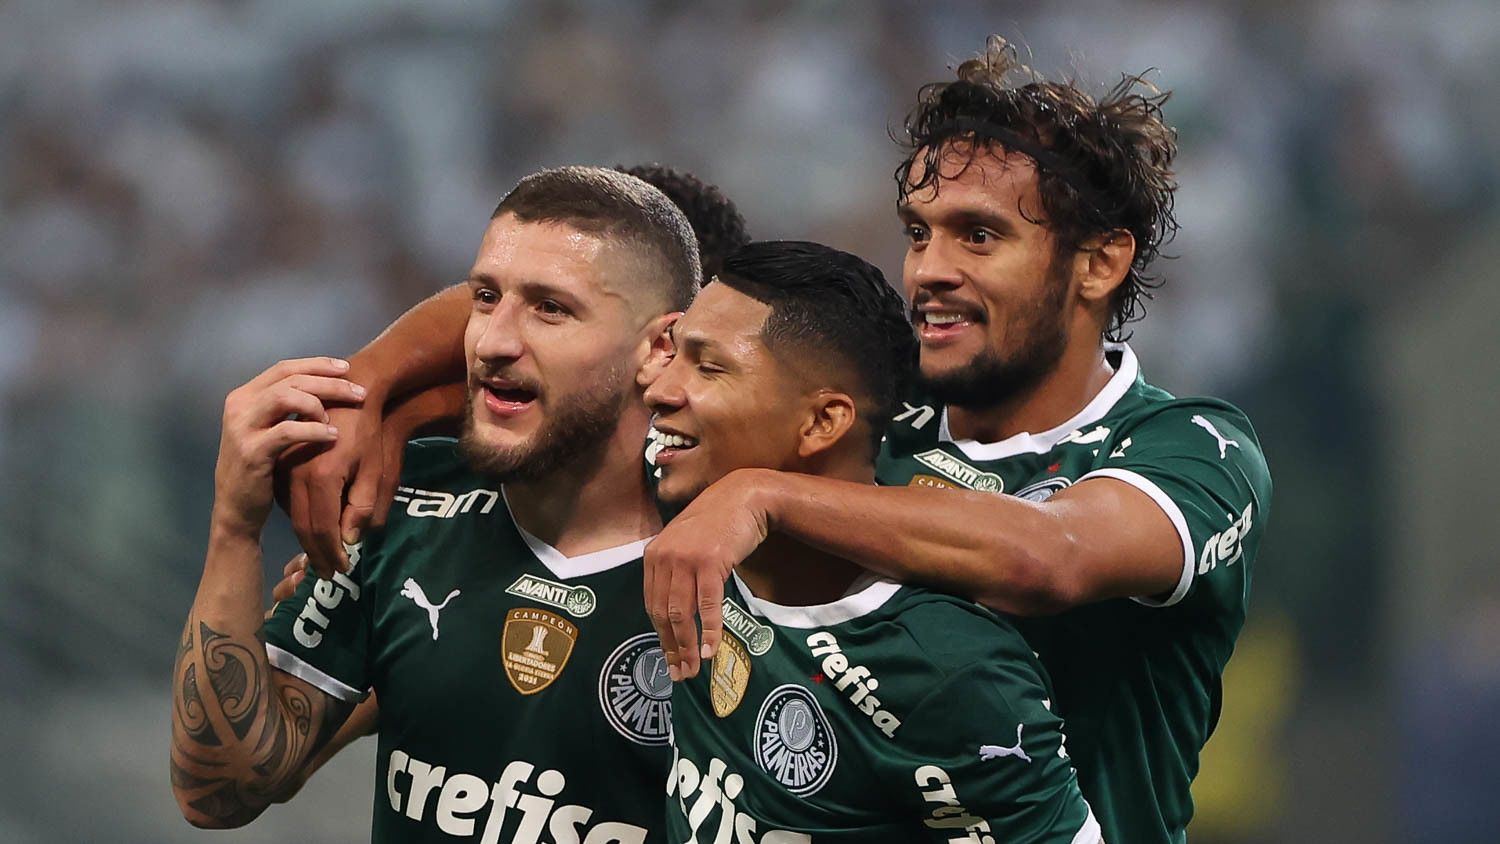 Сан-Паулу — Палмейрас прогноз 21 июня 2022: ставки и коэффициенты на матч бразильской Серии А